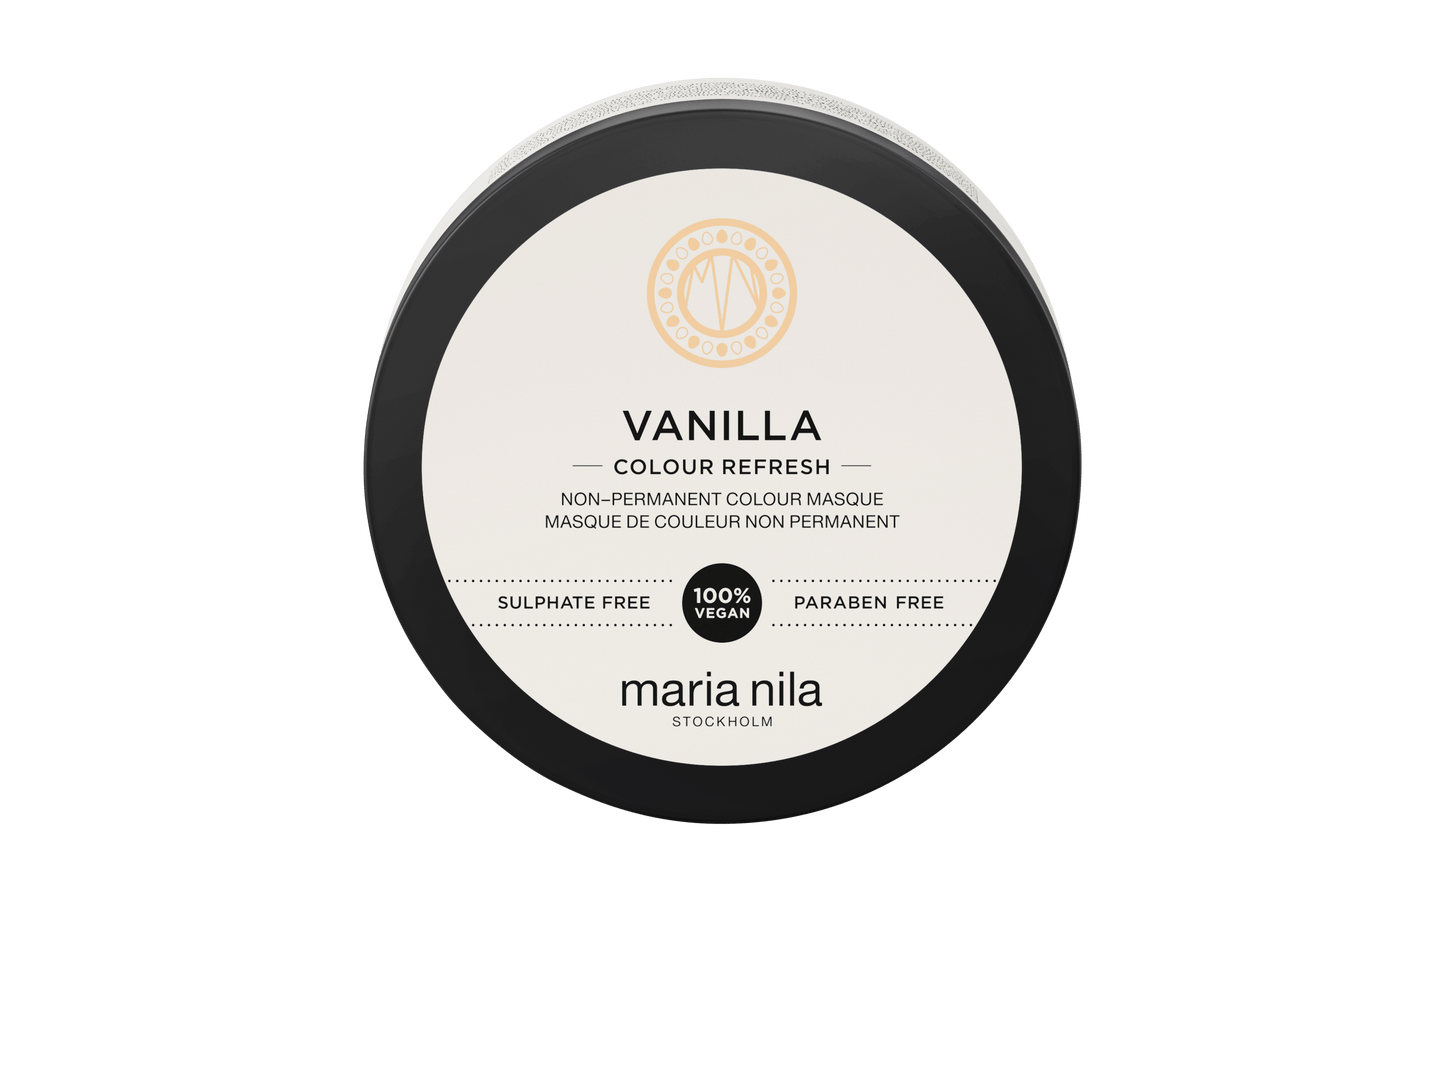 Colour Refresh Vanilla - The Coloroom 